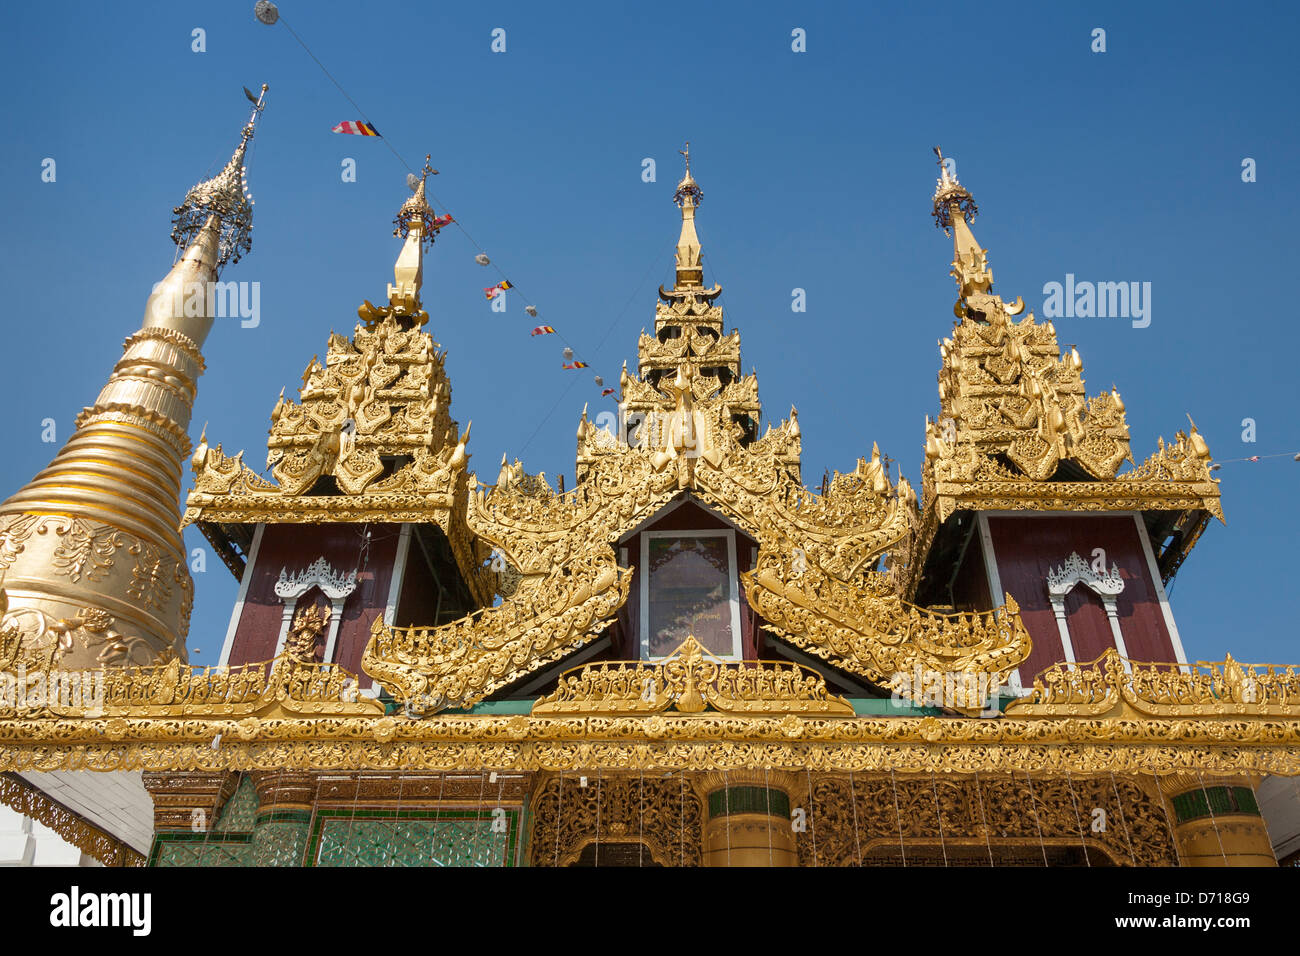 Ornate roof of a building and a stupa at Shwedagon Pagoda, Yangon, (Rangoon), Myanmar, (Burma) Stock Photo